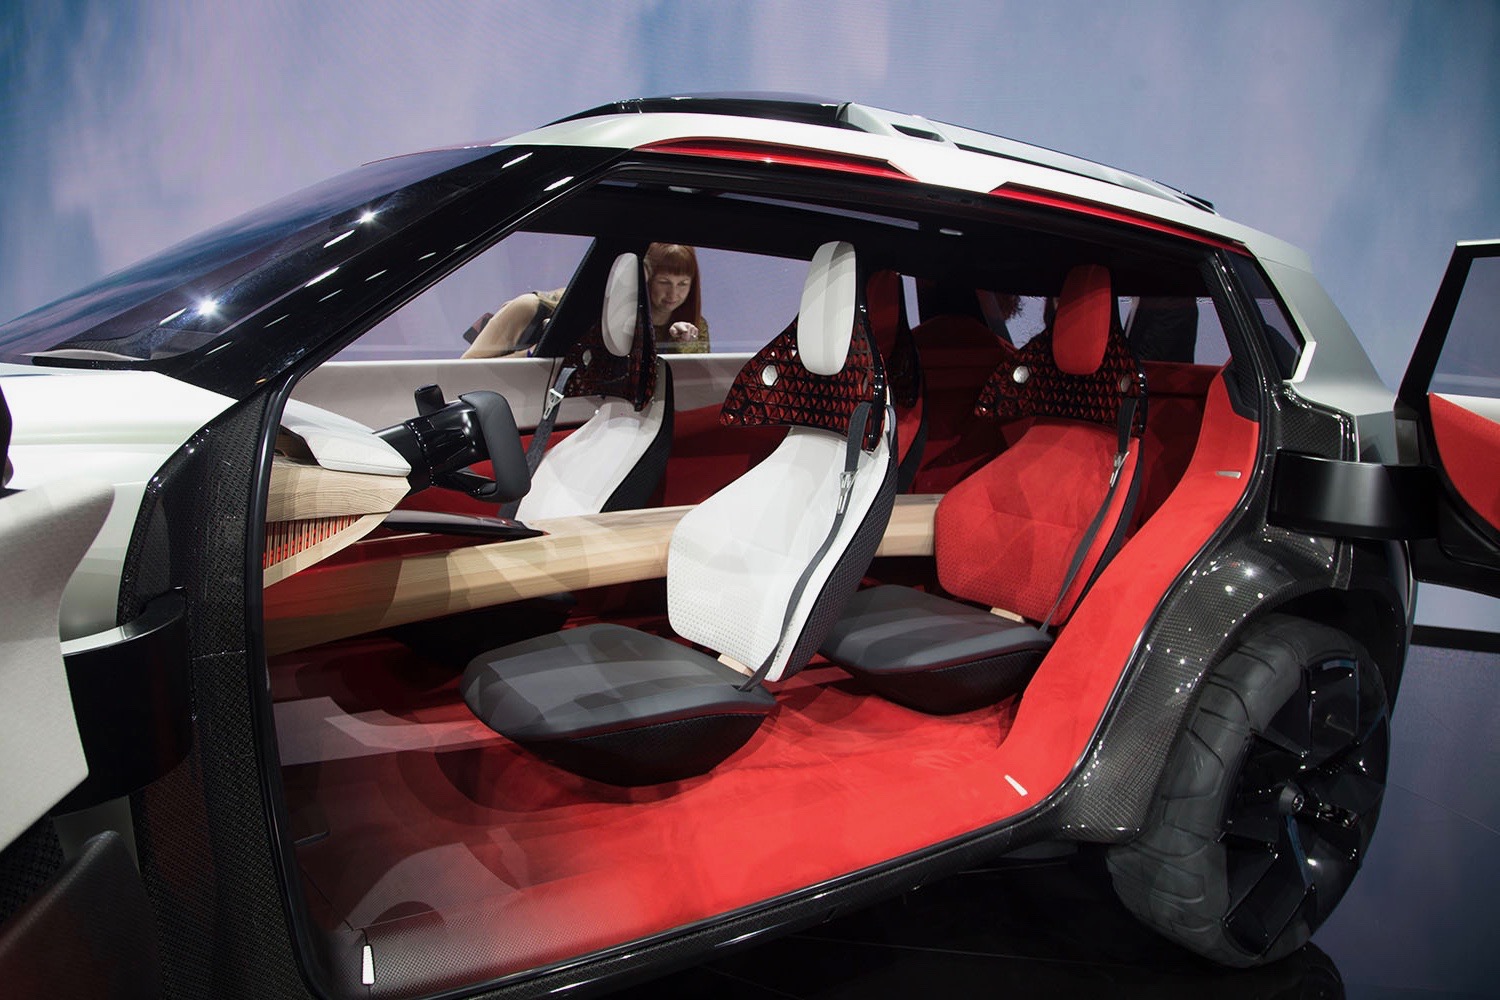 Nissan Xmotion concept